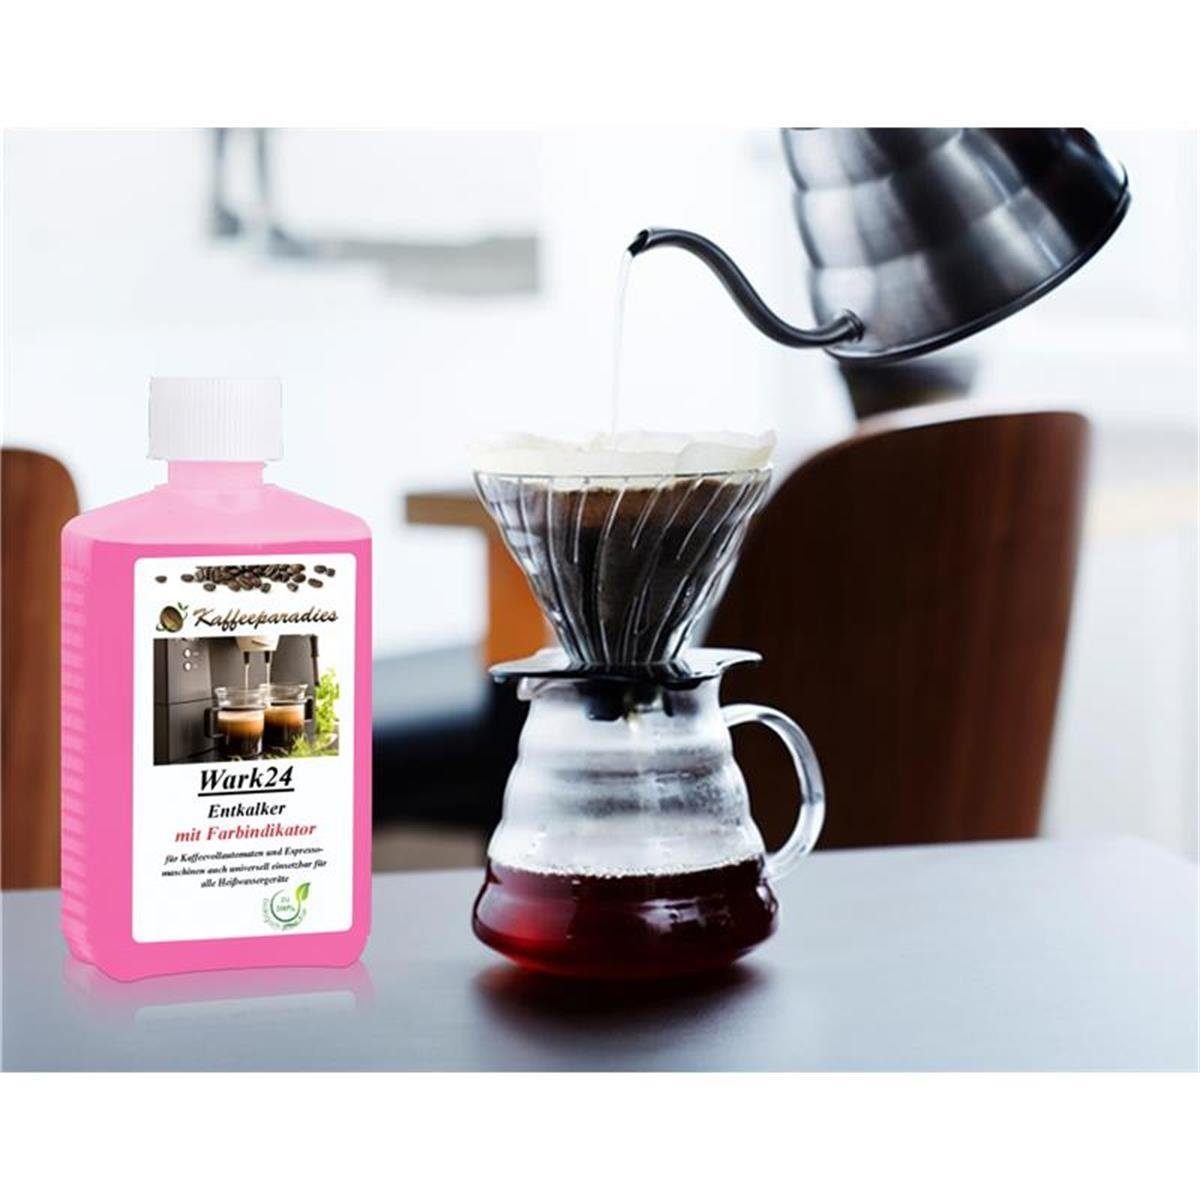 250 ml Entkalker Kaffeevollautomat Flüssig Wark24 Saeco,Bosch,Siemens (8e für Entkalker